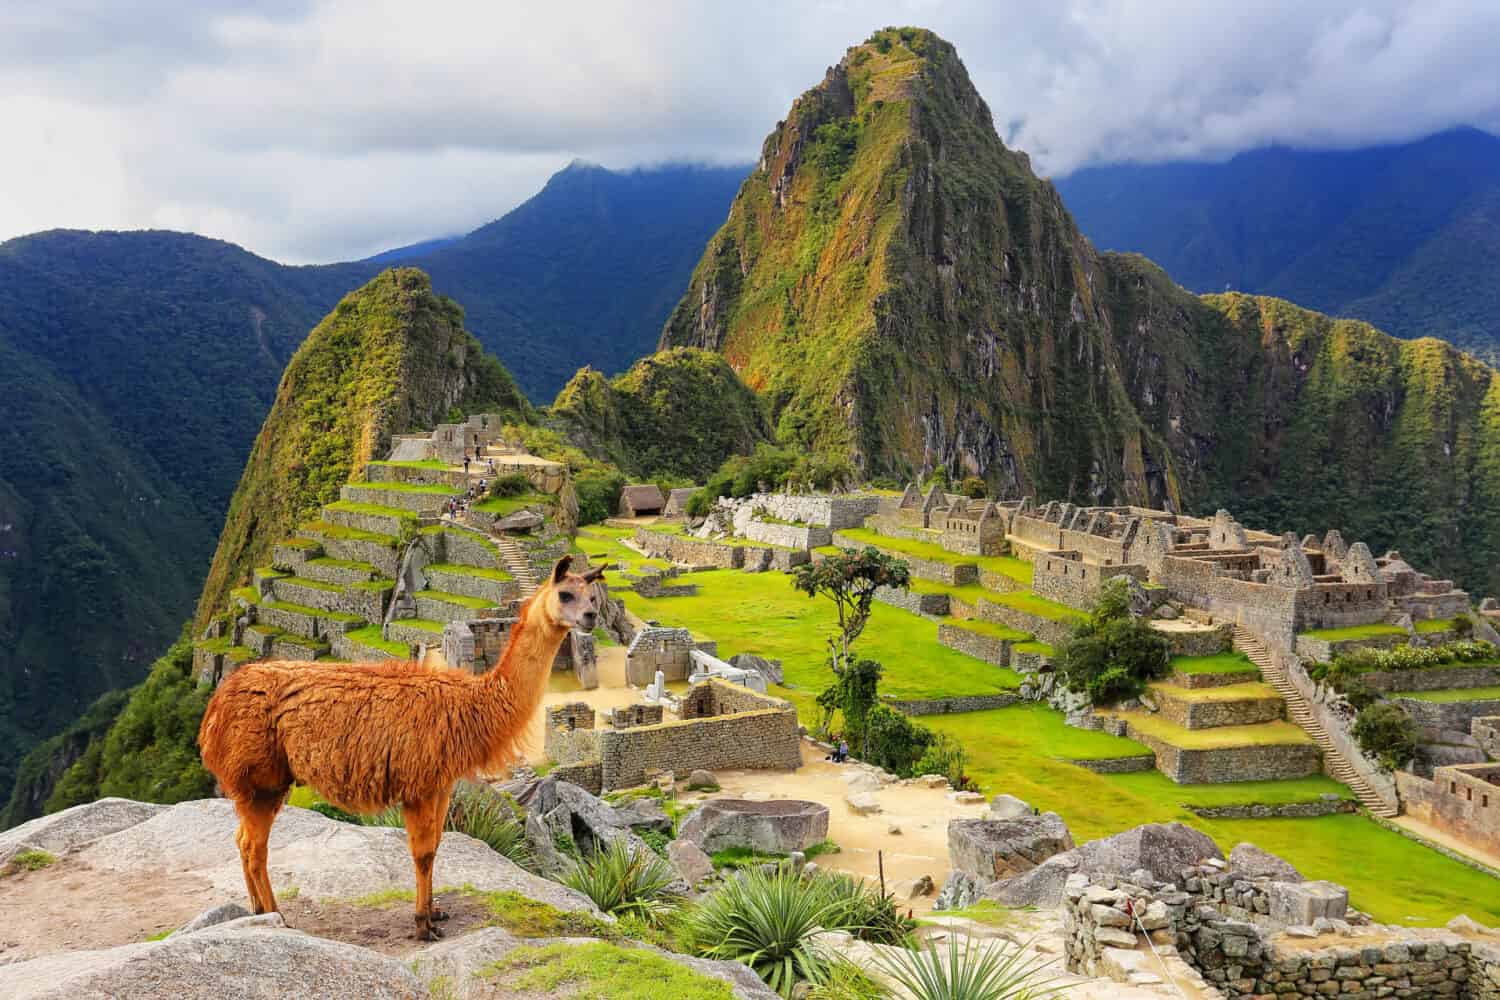 Il lama in piedi a Machu Picchu si affaccia in Perù.  Nel 2007 Machu Picchu è stata votata come una delle Nuove Sette Meraviglie del Mondo.